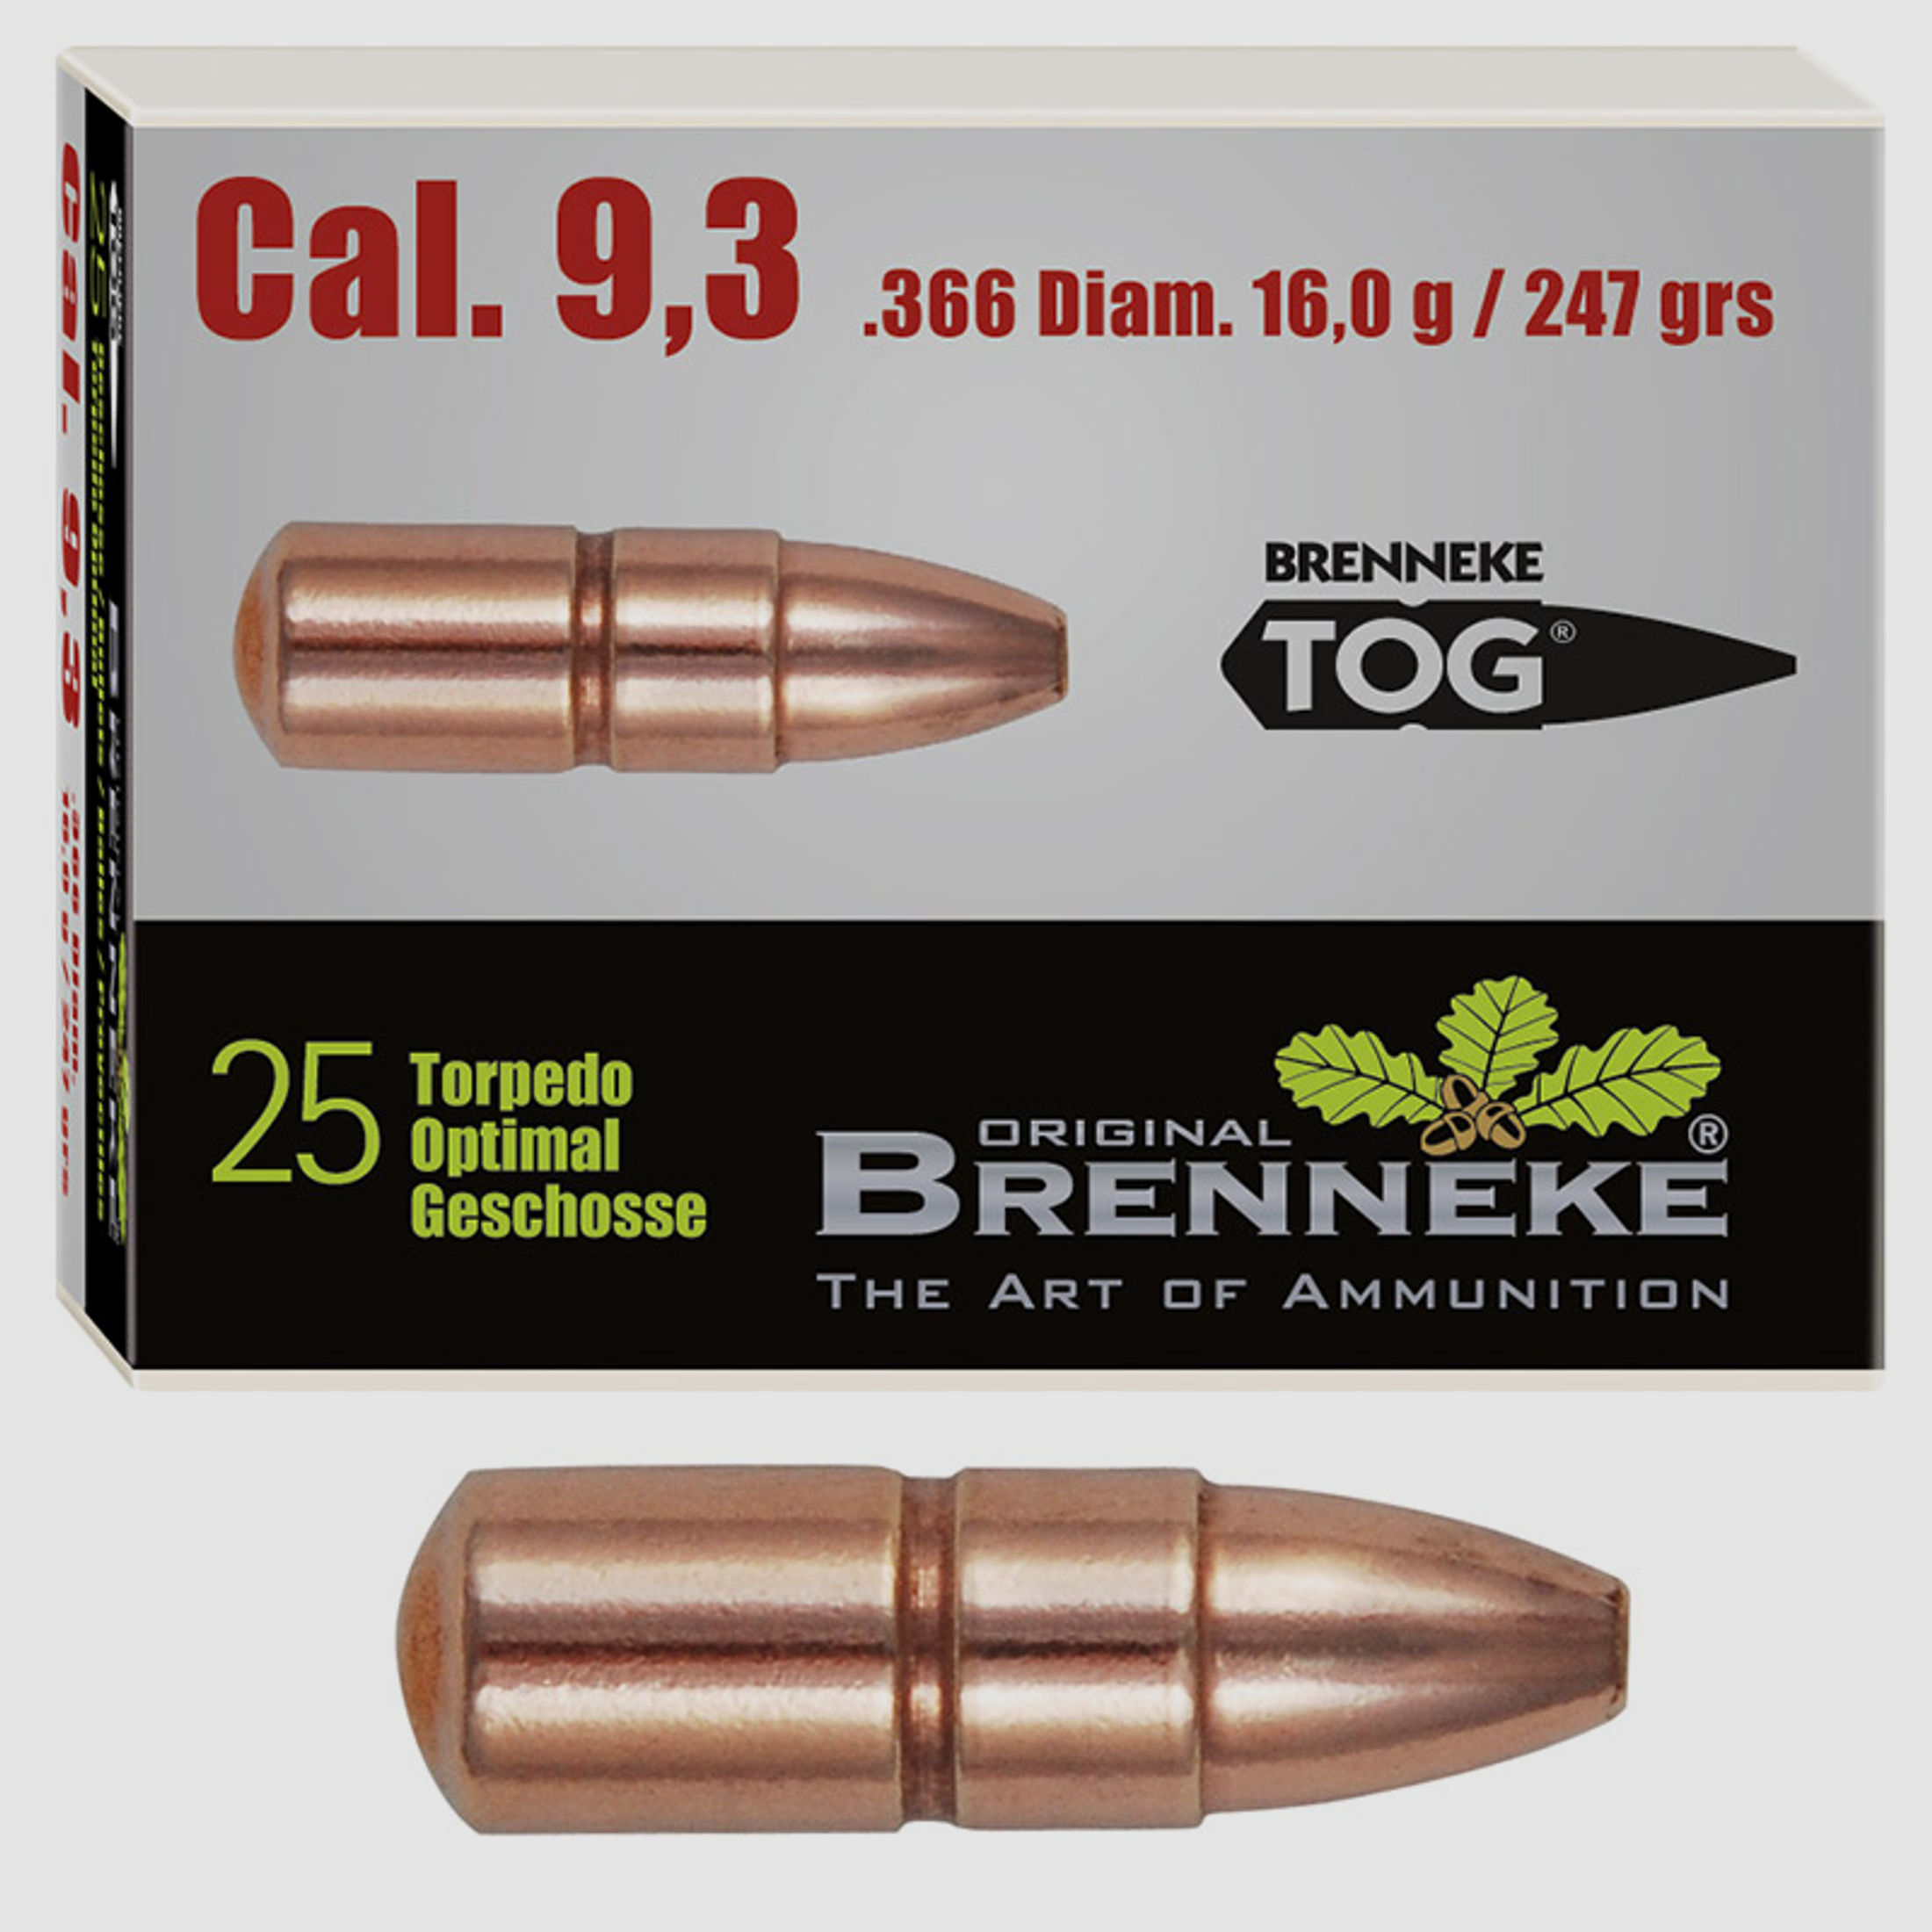 Brenneke Geschoss 9,3mm (.366) TOG 16g / 247grs 25 Stück